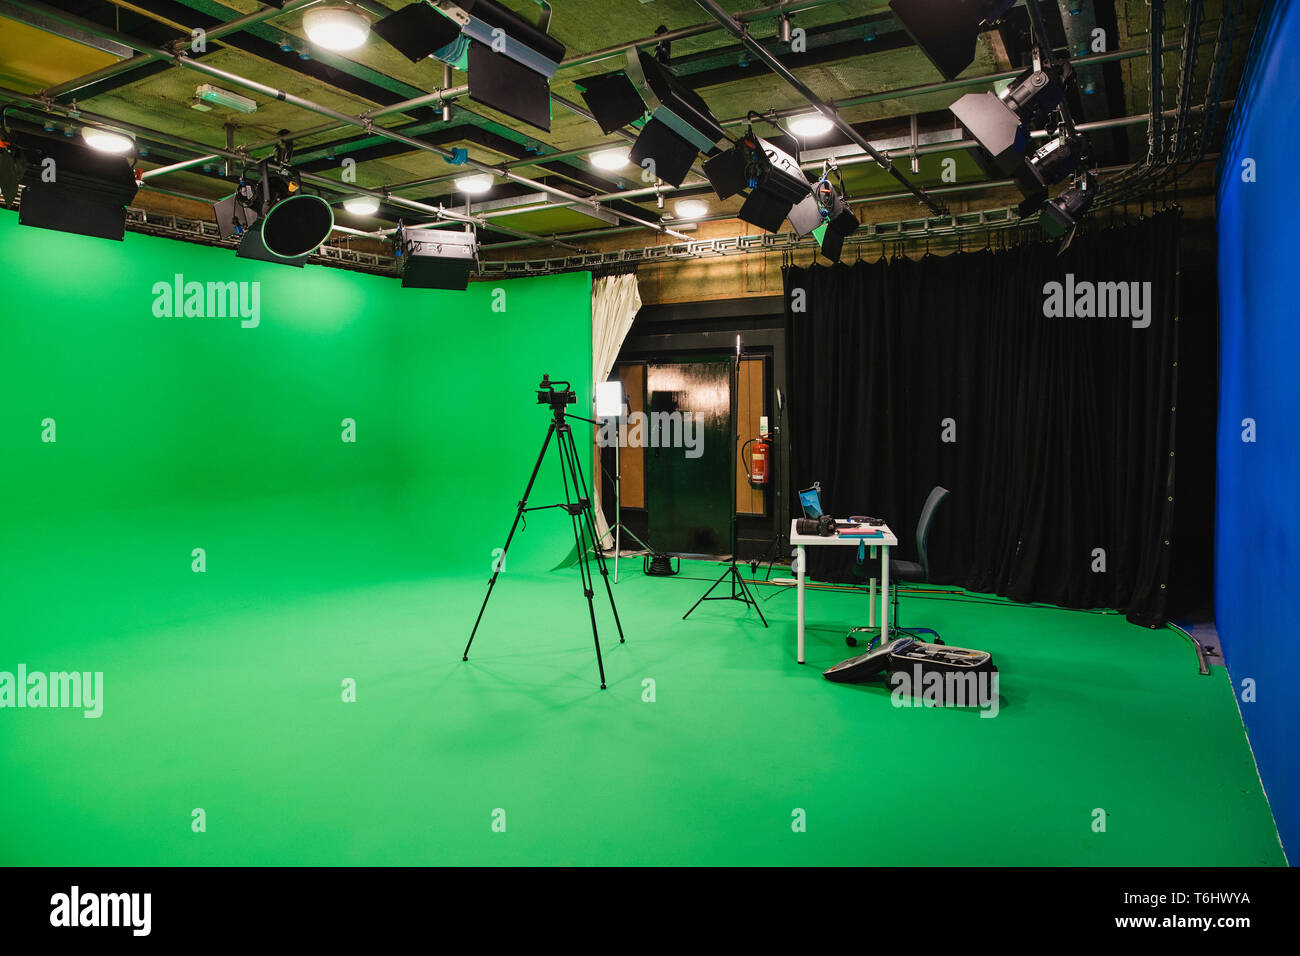 Ein Weitwinkel- aufnahme eines Film Studio, einem Green Screen umgibt die Inneneinrichtung, ein Stativ steht in der Mitte des Raumes mit einer Kamera bereit zum Film Stockfoto